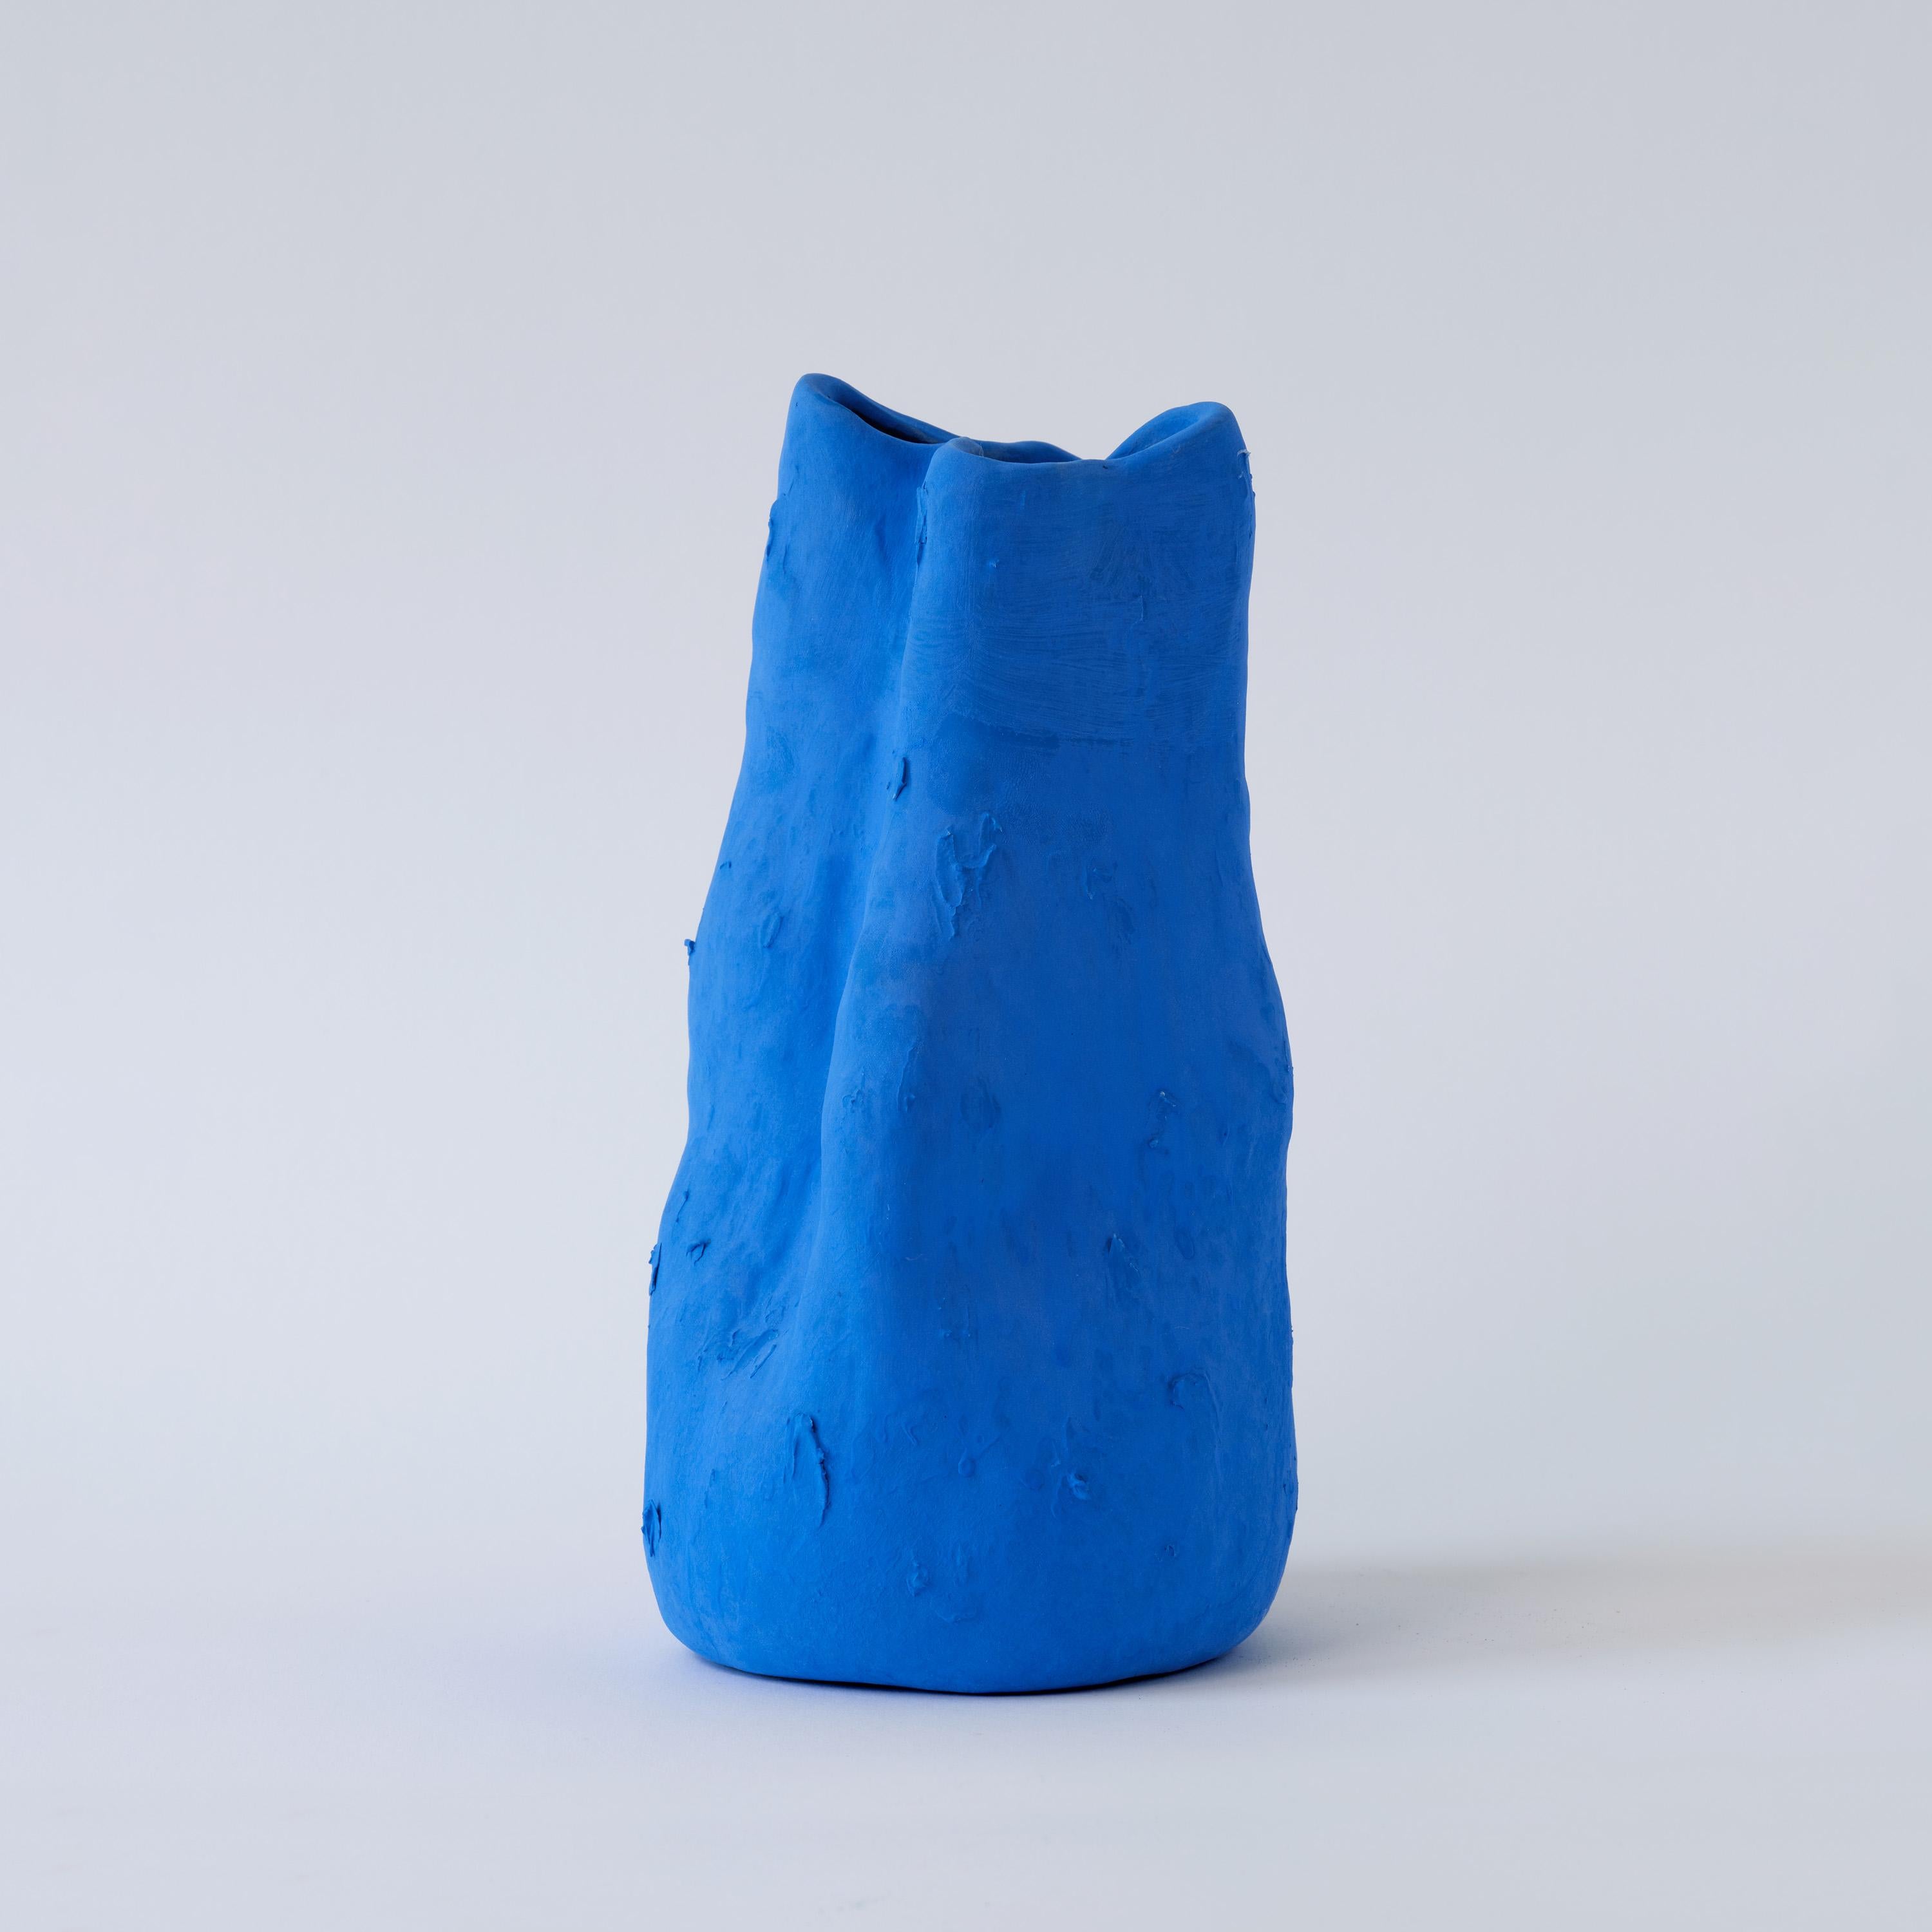 D'un bleu mat calme et d'une texture authentiquement non émaillée, le vase Georgia incarne l'esprit audacieux et imaginatif de la vision artistique d'Yves Klein.

Dans le monde actuel soucieux de l'environnement, la porcelaine se distingue comme un